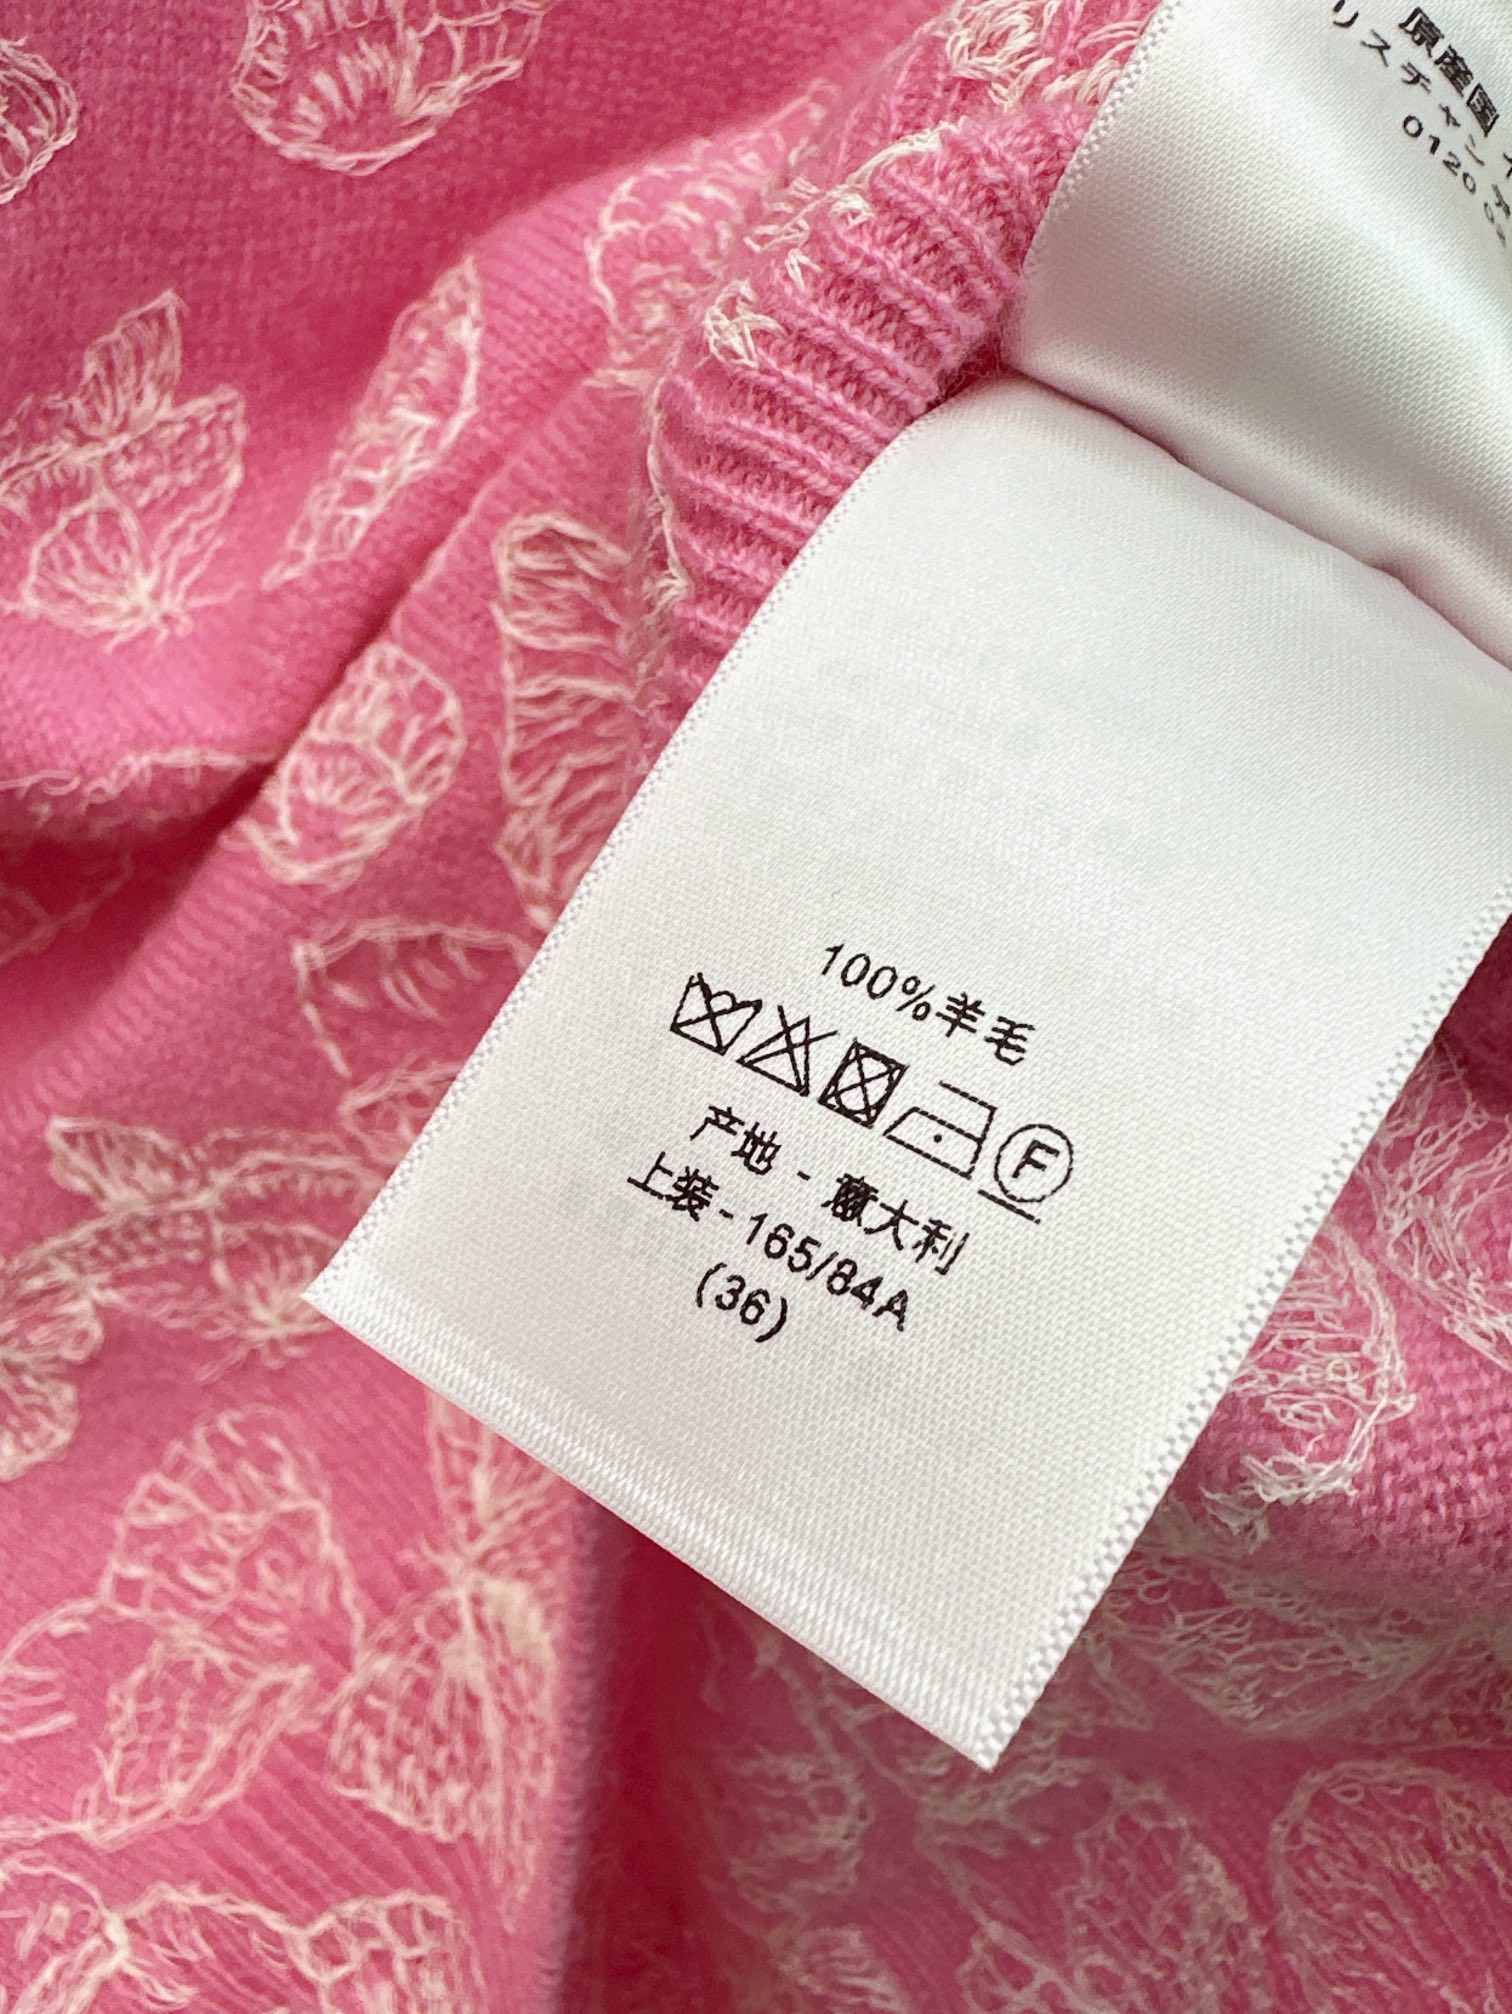 高版本Gu24Ss春夏最新款重磅蝴蝶刺绣短袖针织衫粉色真的太少女心了很难让人不爱定纺超亲肤百分百羊毛纱线